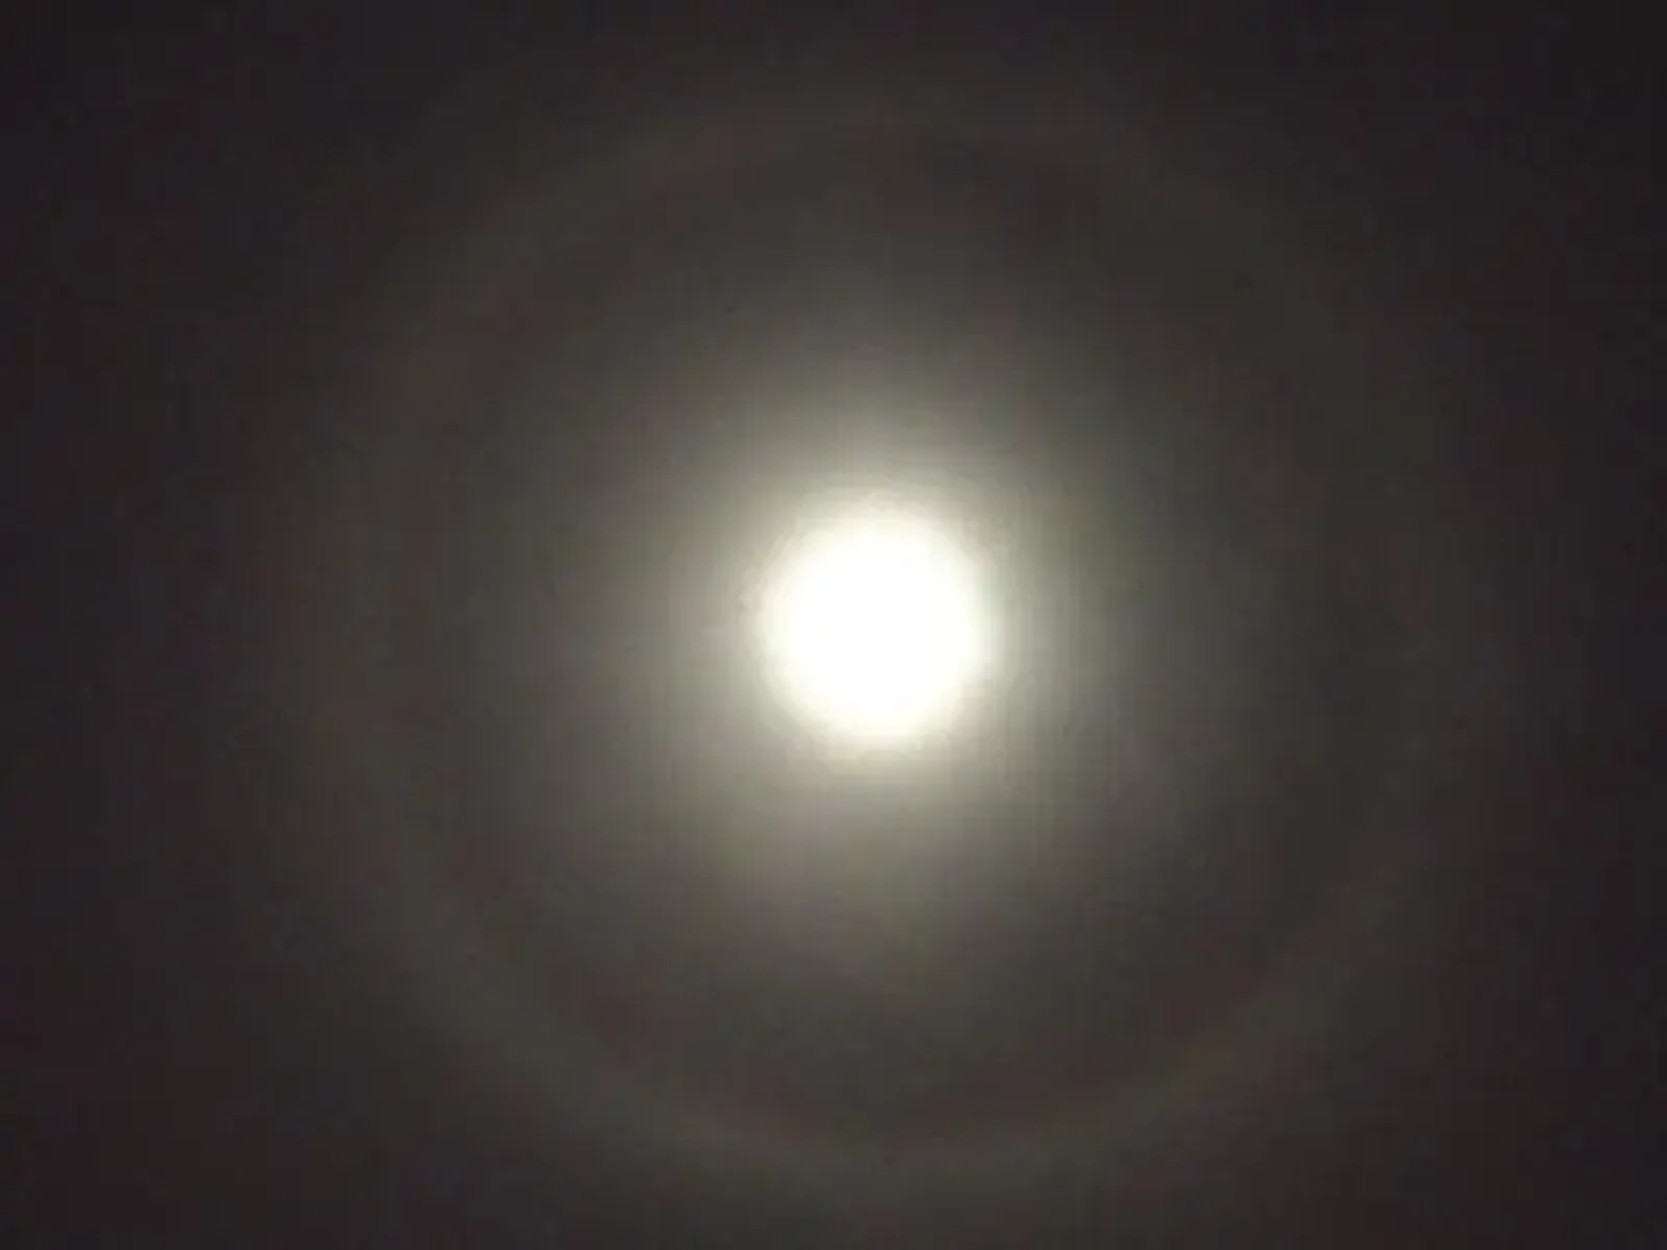 Εντυπωσιακό φεγγάρι με… φωτοστέφανο! Τα κακά “μαντάτα” που φέρνει το σπάνιο φαινόμενο (pics)